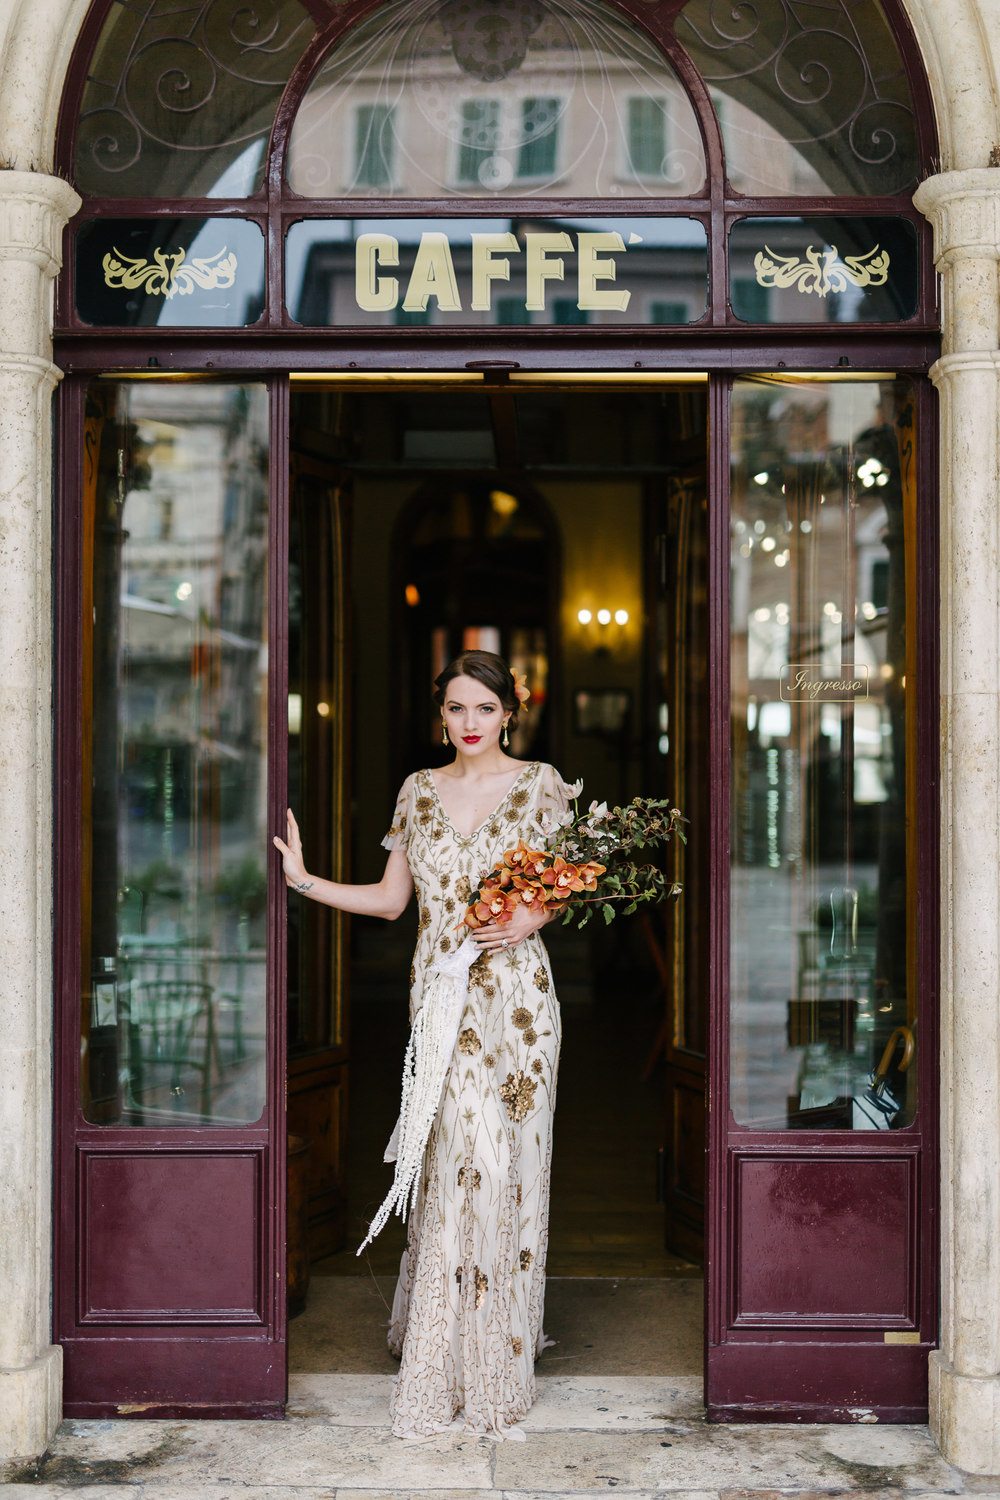 Denk vooruit Chemicus Kostbaar Art Deco Wedding Inspiration in a Renowned Italian Cafe ⋆ Ruffled